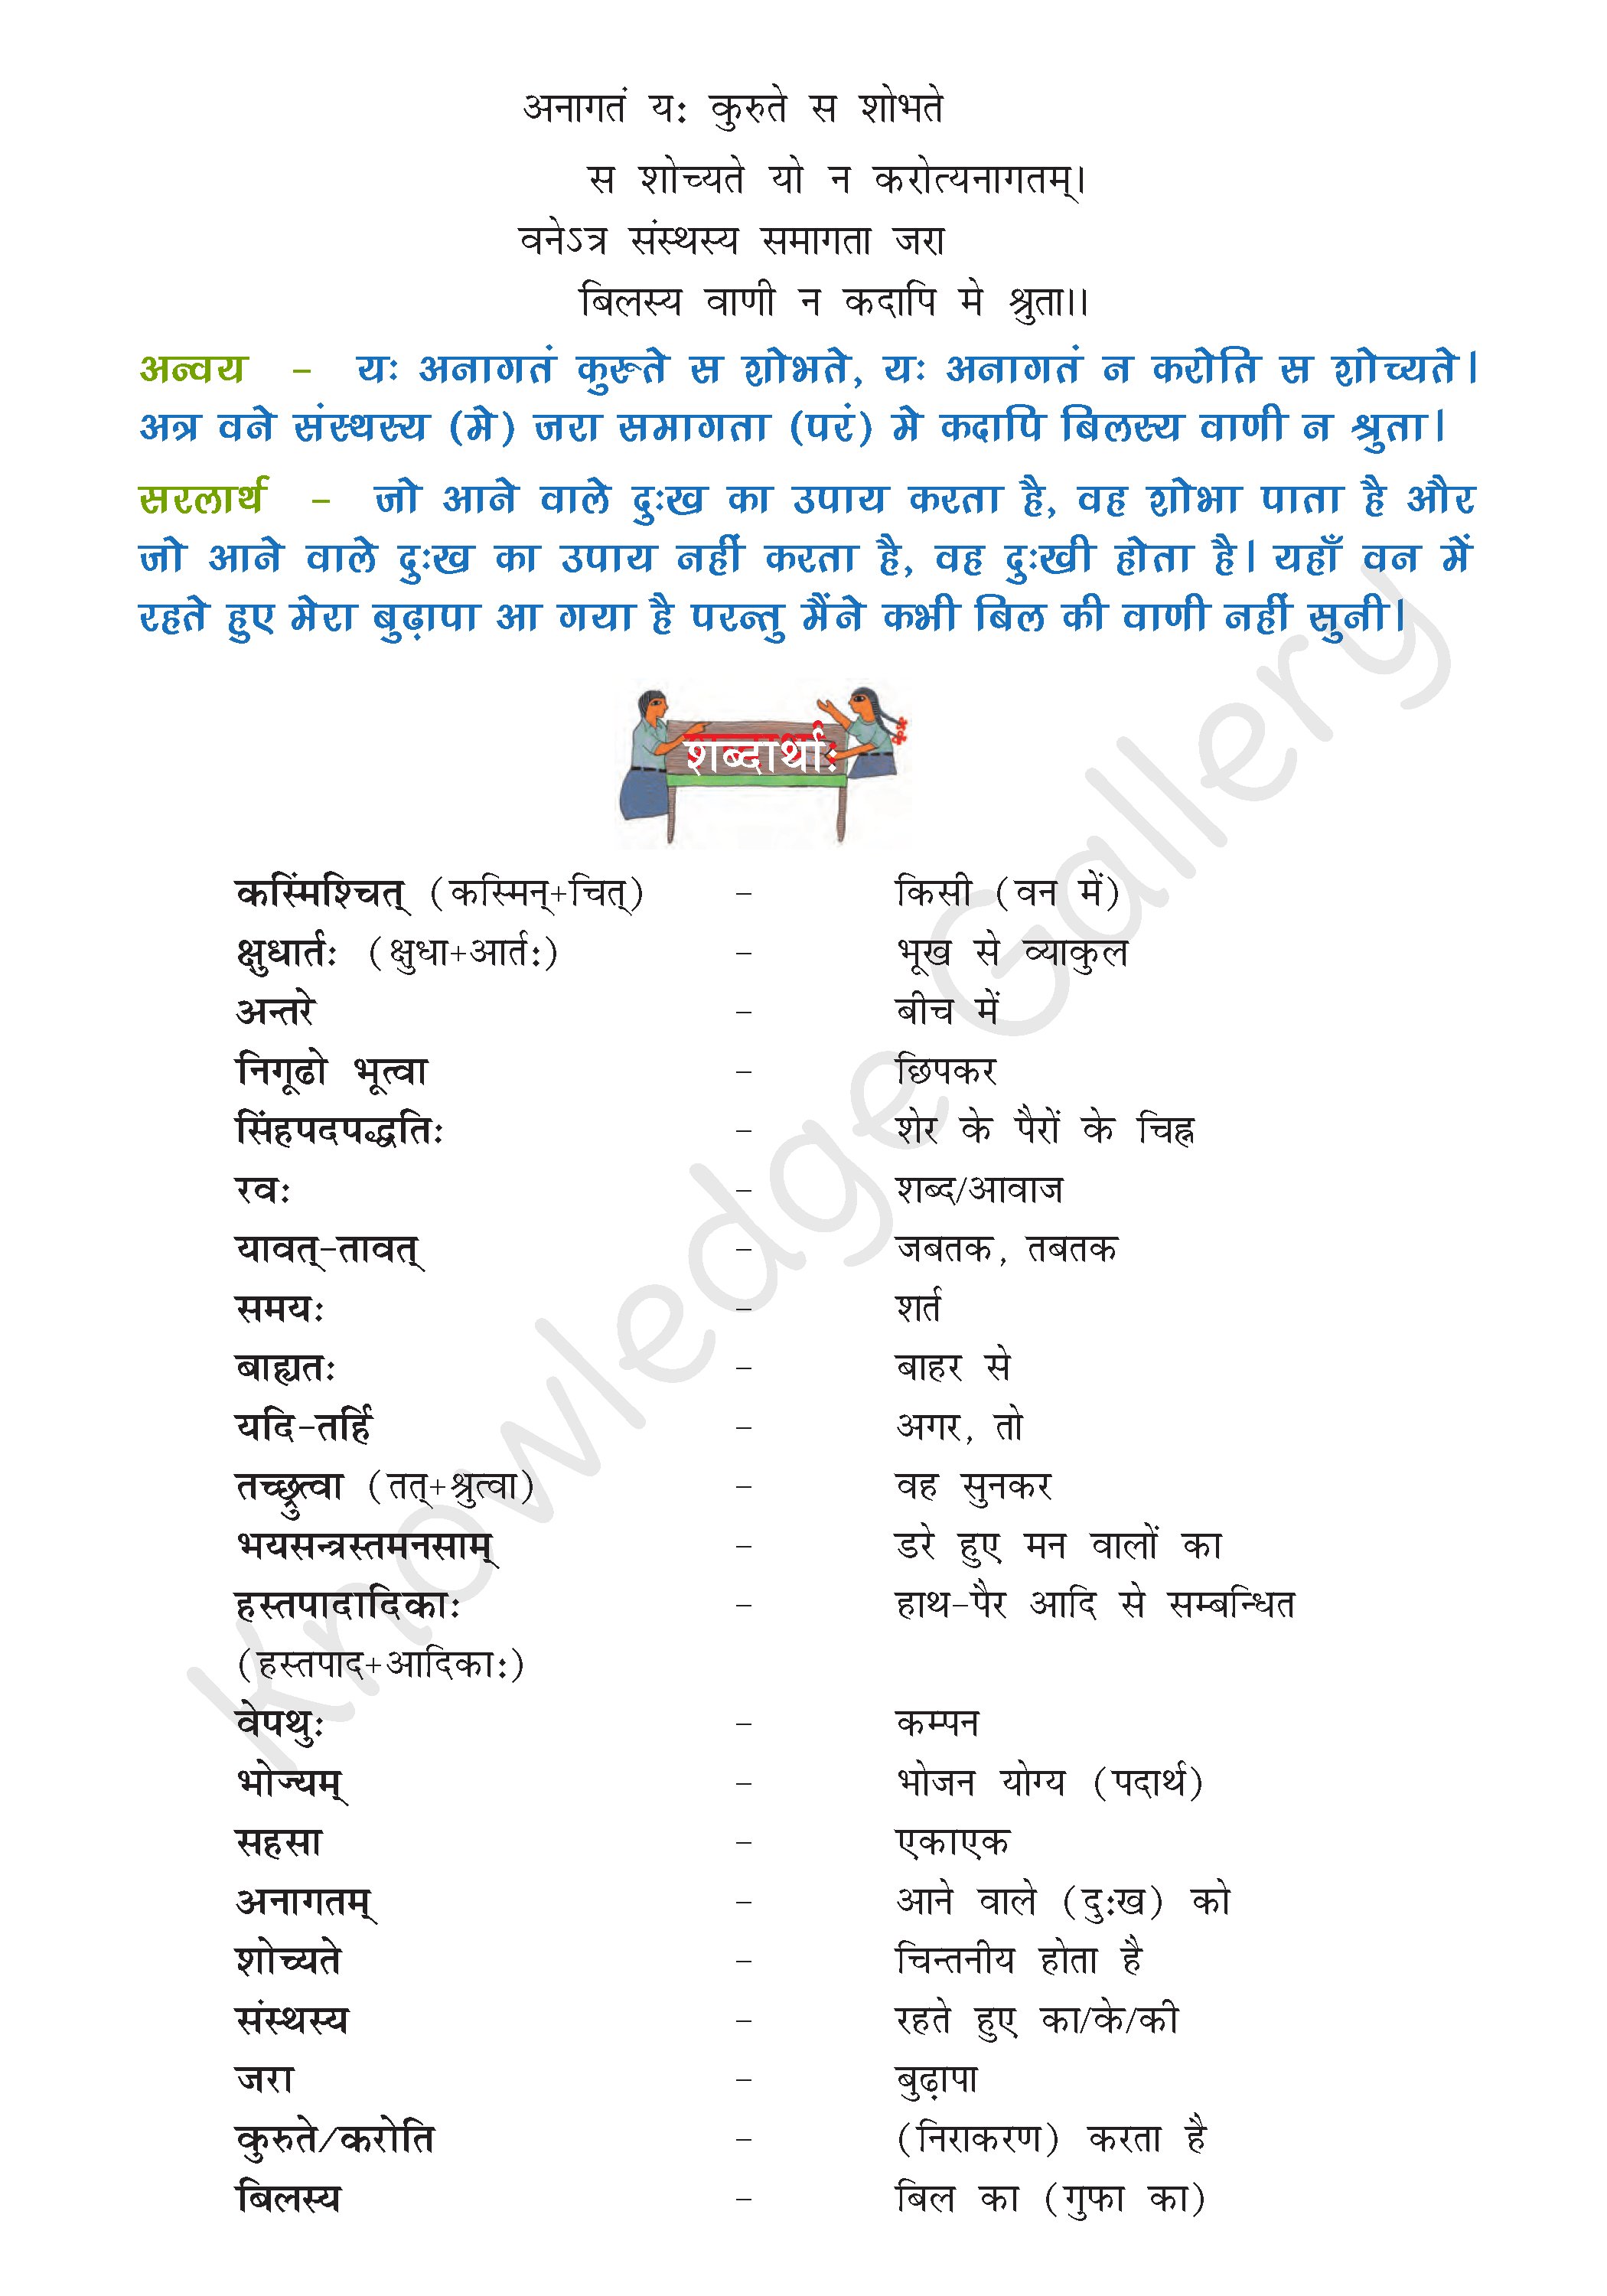 NCERT Solution For Class 8 Sanskrit Chapter 2 part 3